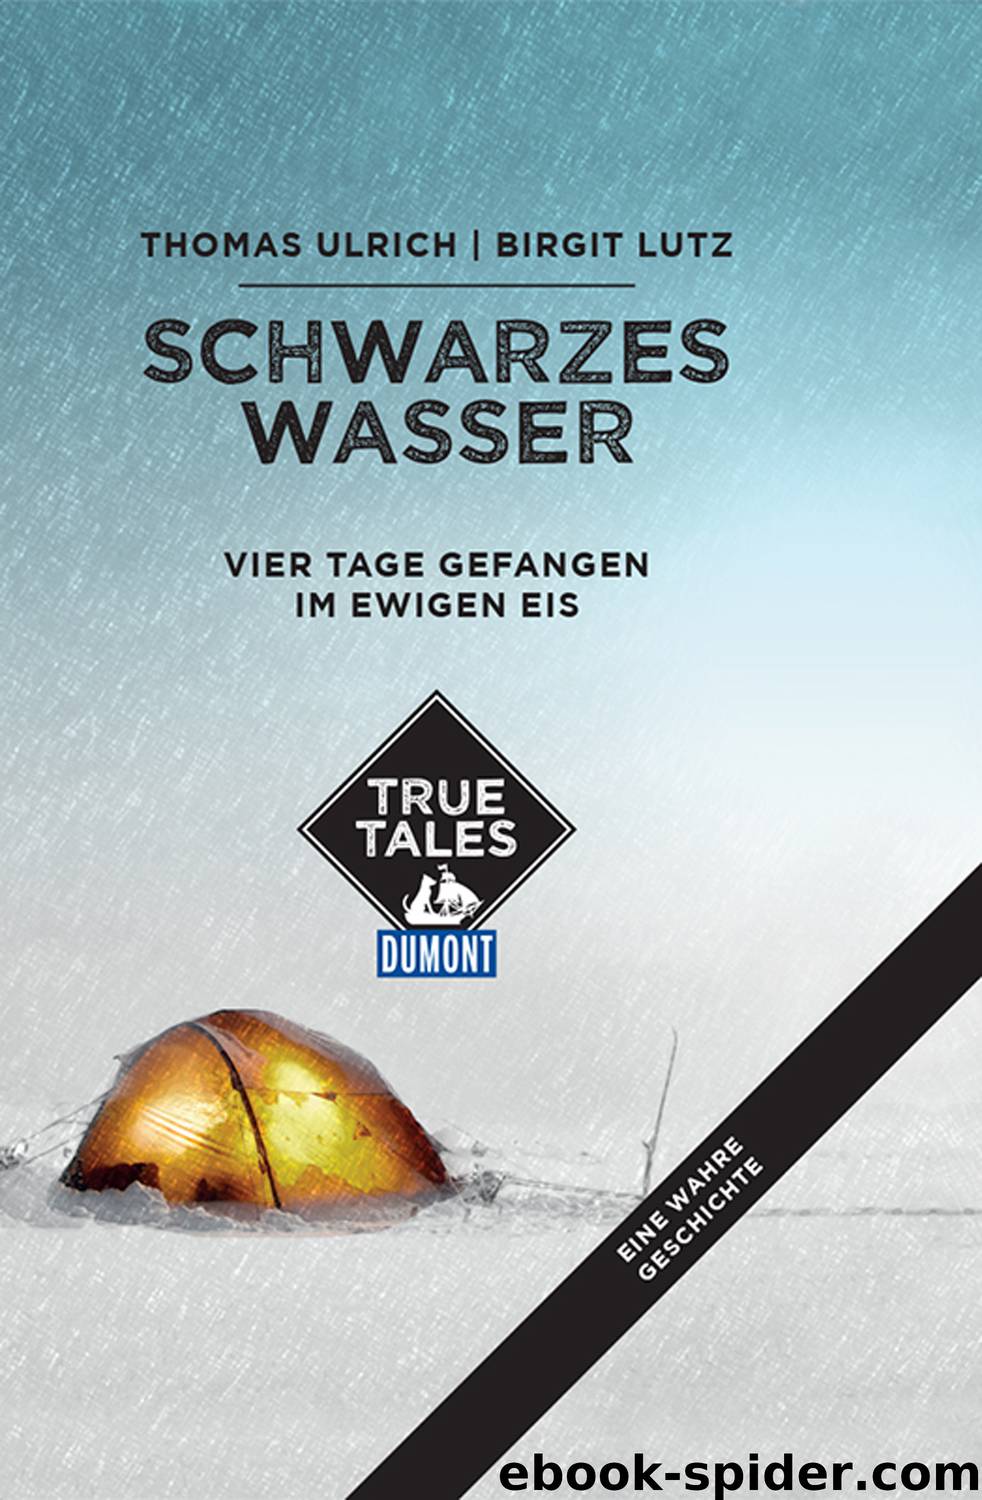 DuMont True Tales Schwarzes Wasser by Thomas Ulrich & Birgit Lutz